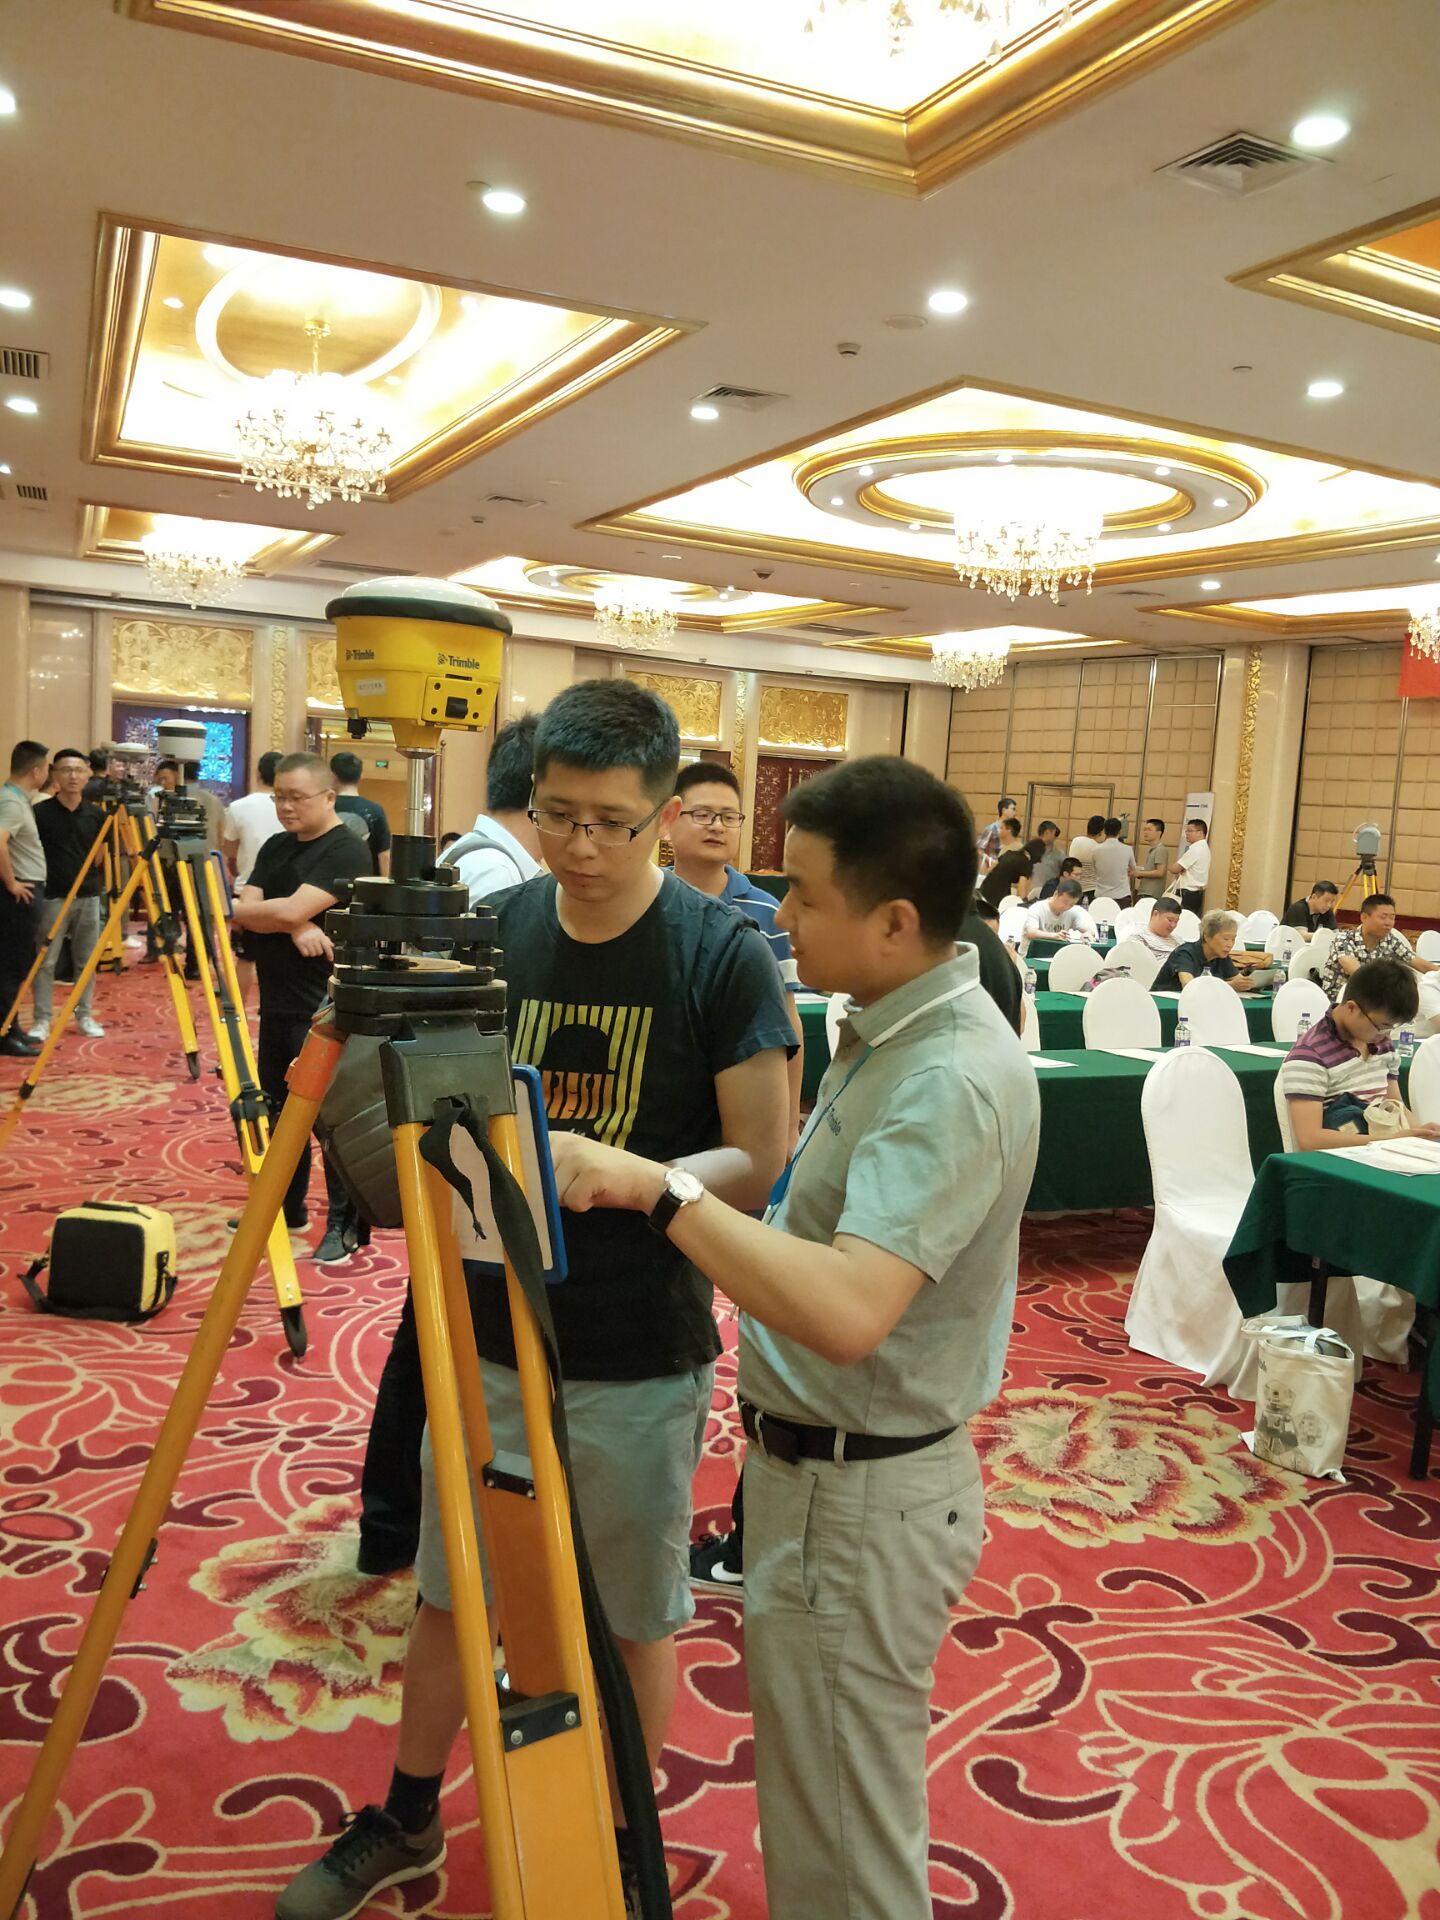 武汉天宝耐特、长沙展会、产品一级代理商、大地测量及监测产品、水上产品、航测产品、光学影像产品、水文应急监测